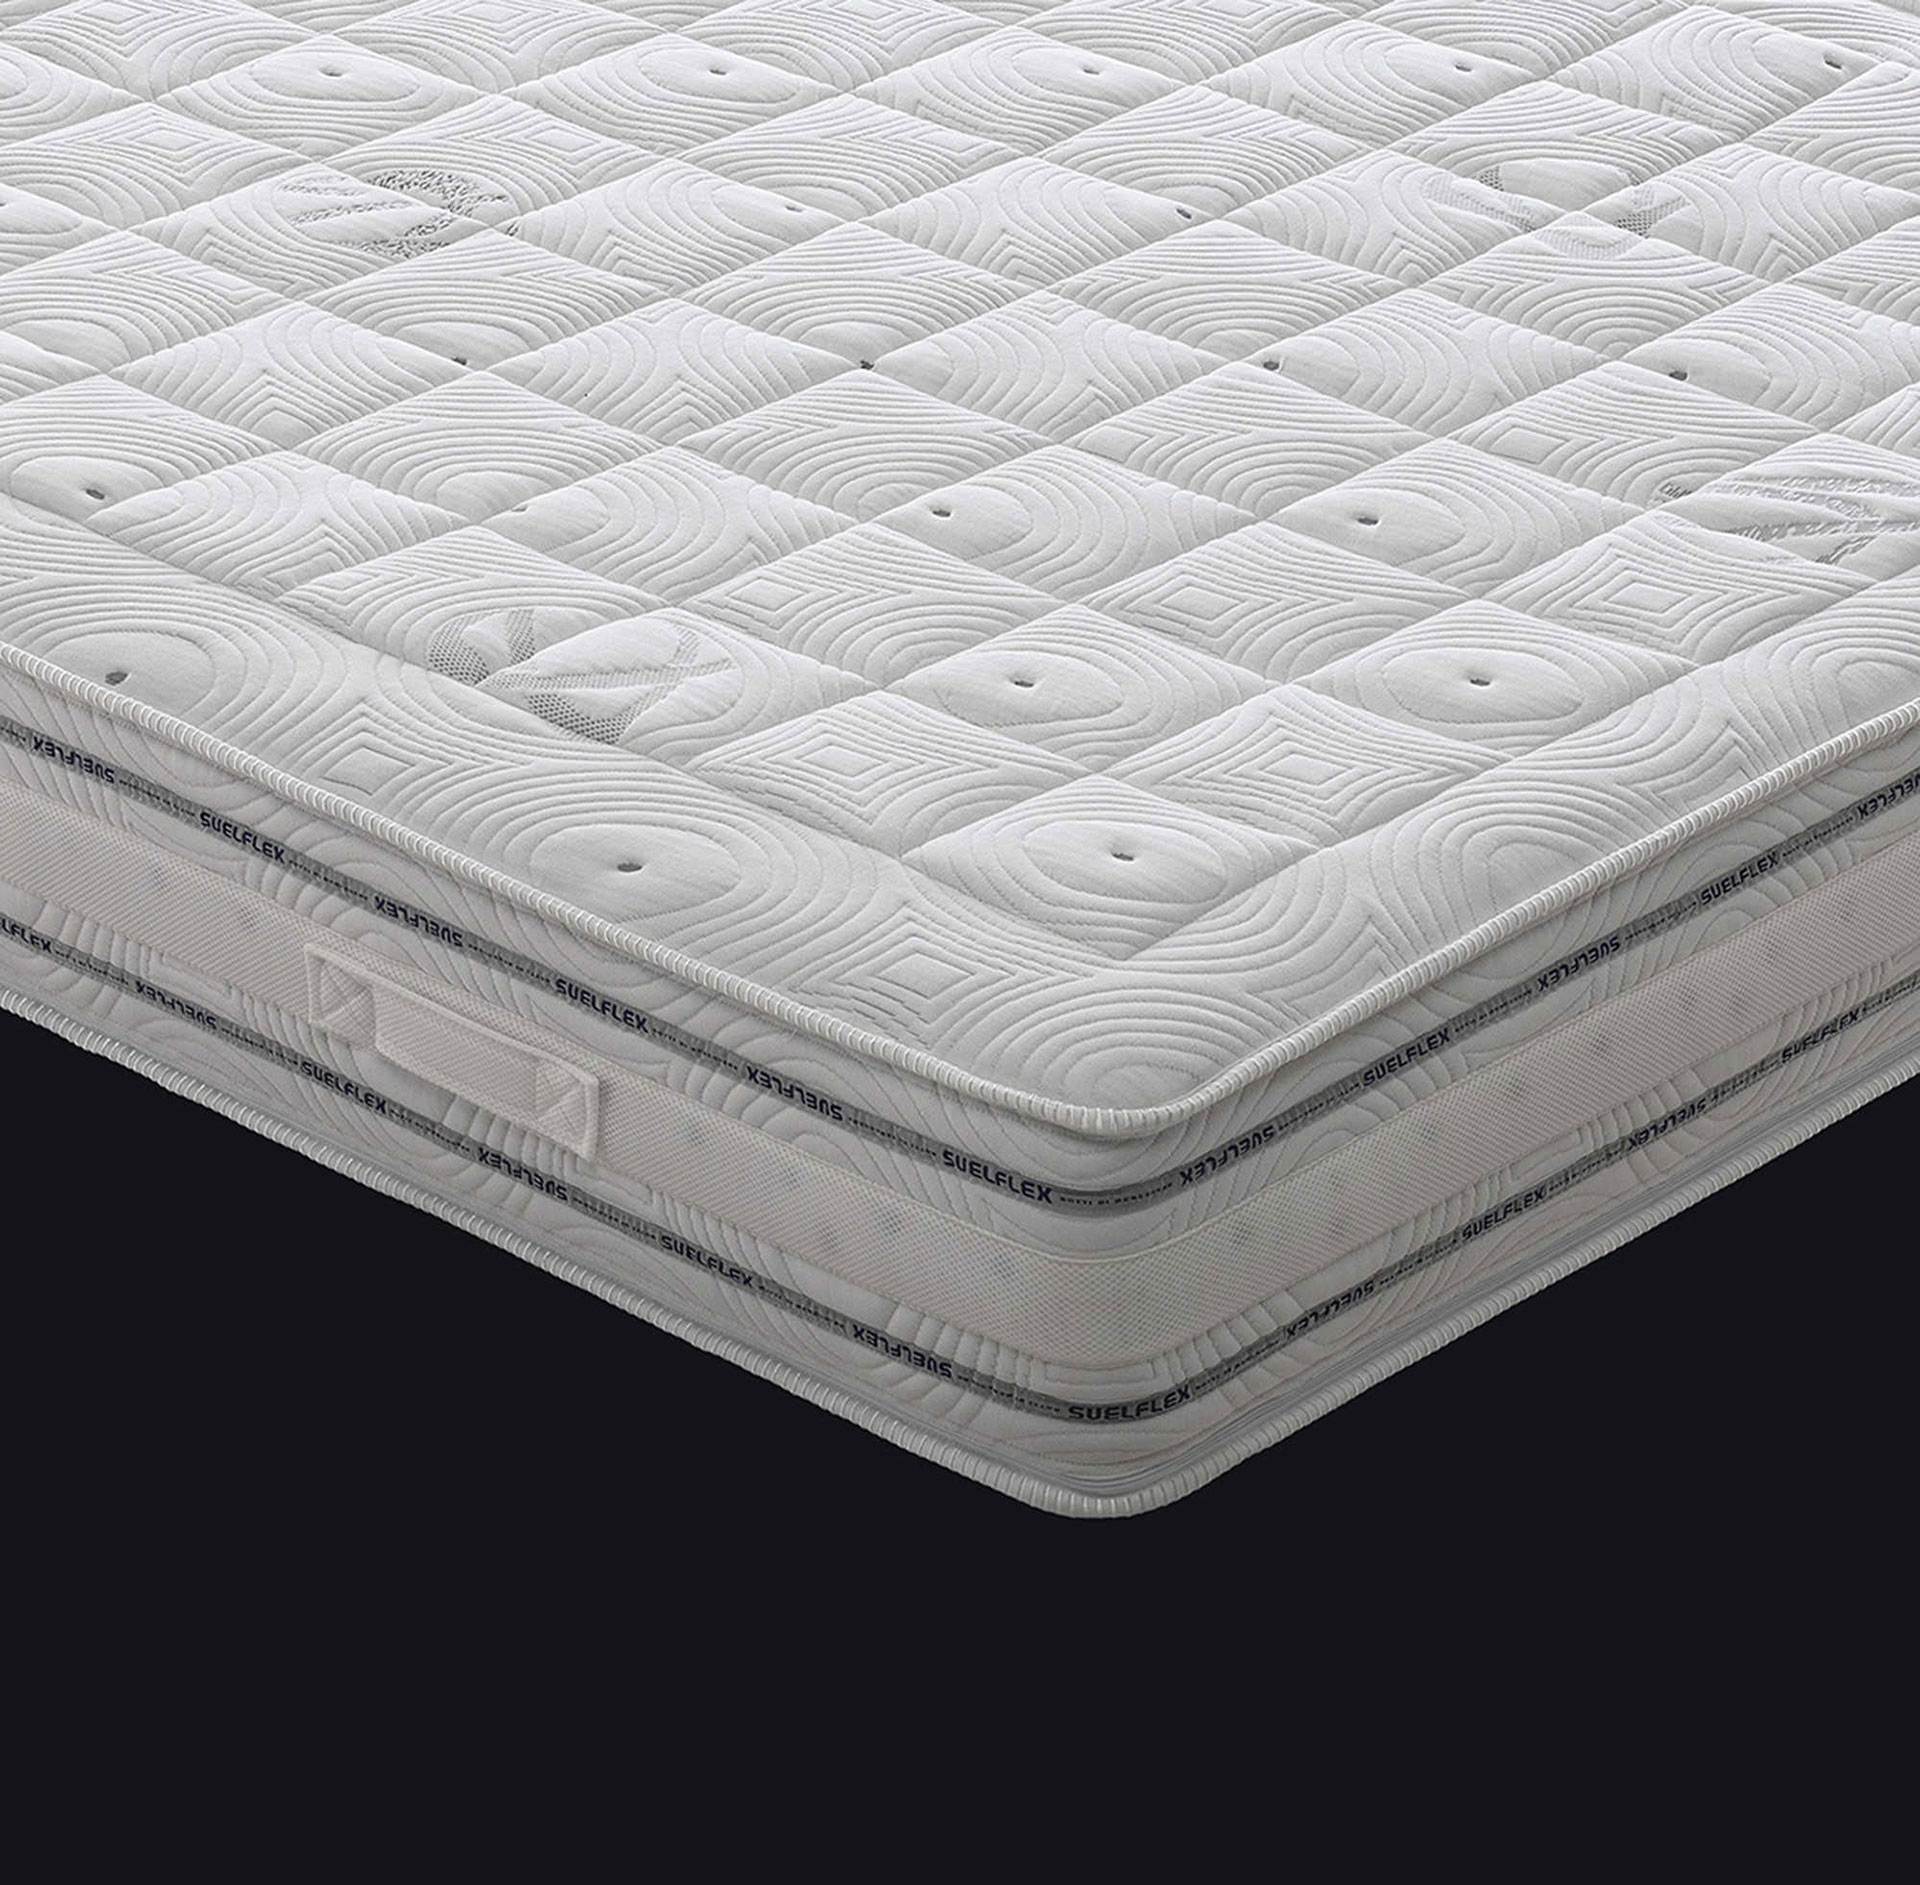 Atene - Materasso Molle Insacchettate - Memory Foam  materasso naturale singolo ebay materassi 